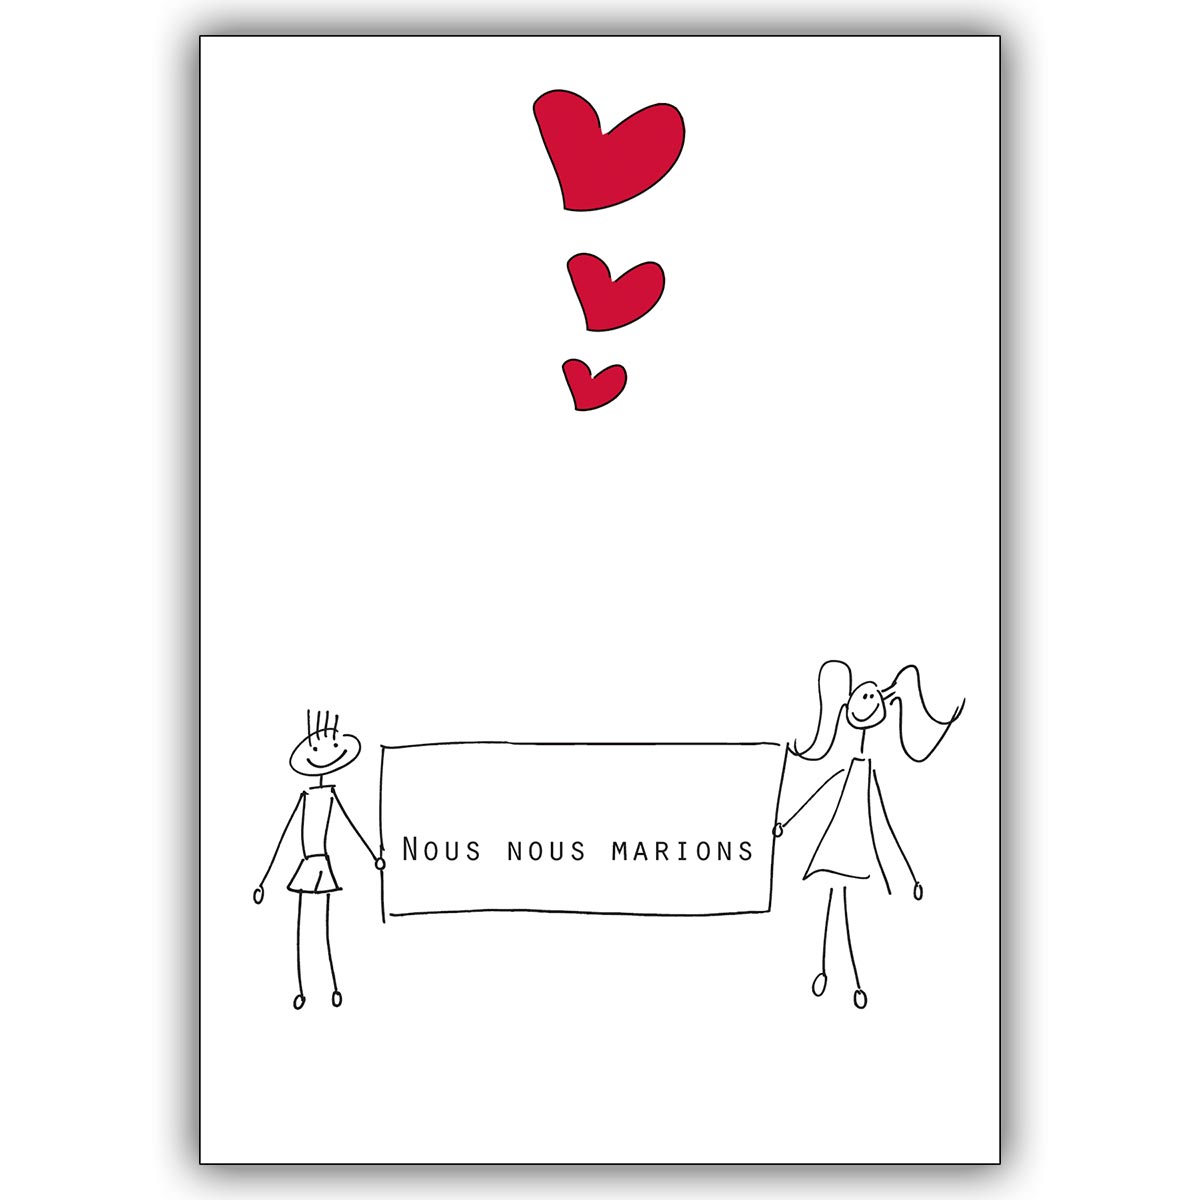 Schöne Hochzeitsanzeigenkarte auf französisch: Nous nous marions.